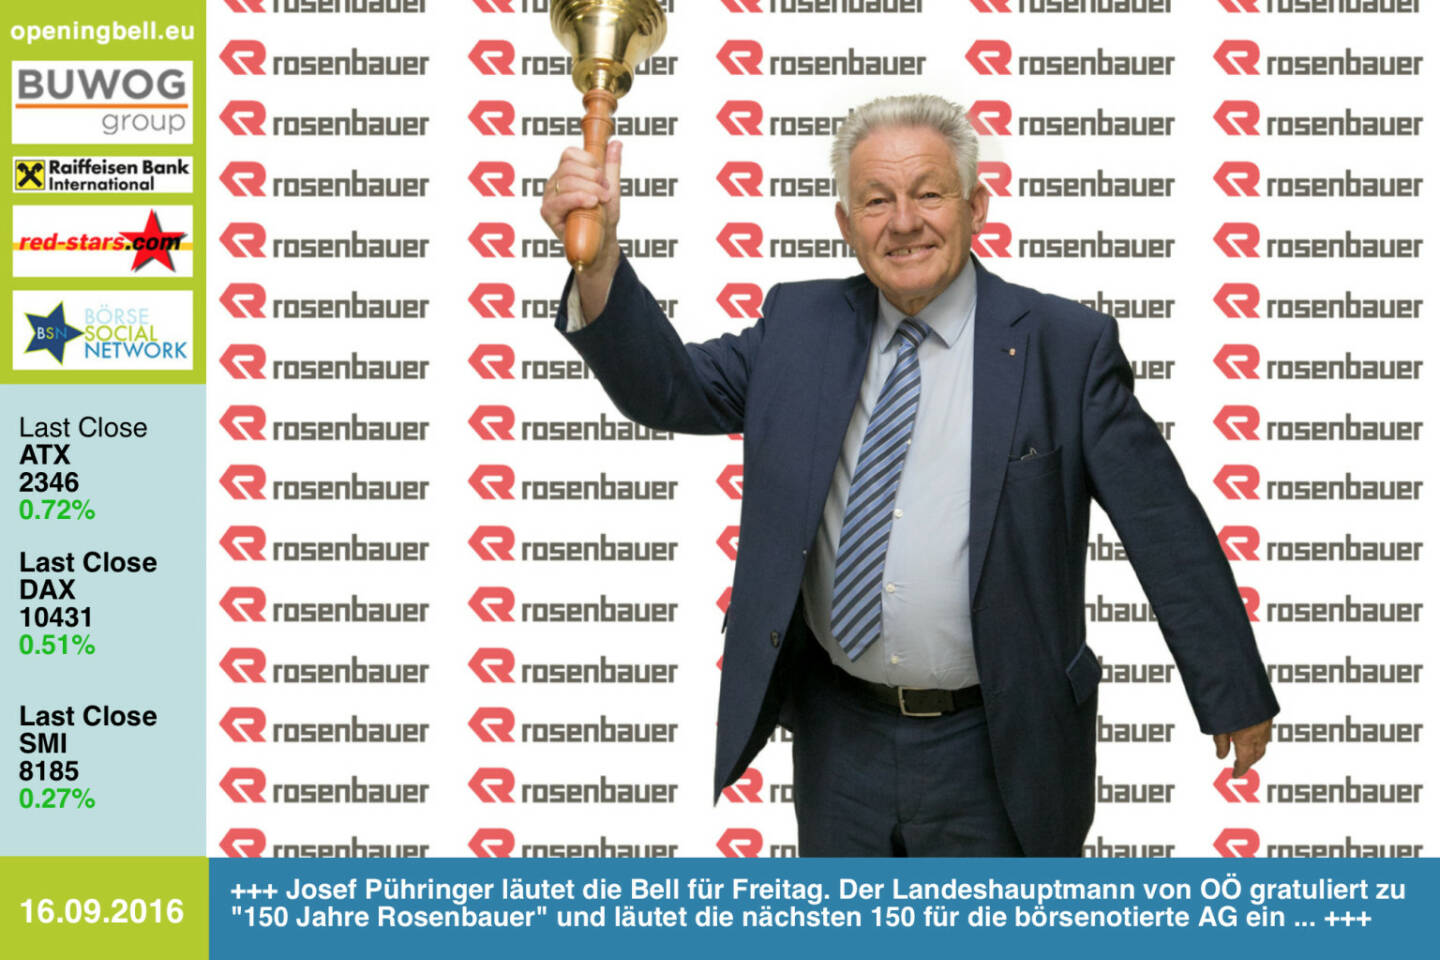 #openingbell am 16.9.: Josef Pühringer läutet die Opening Bell für Freitag. Der Landeshauptmann von Oberösterreich gratuliert zu 150 Jahre Rosenbauer und läutet die nächsten 150 für die börsenotierte AG ein ... Video zum 150er: https://www.youtube.com/watch?v=zm-6QhtbzoQ&feature=youtu.be http://www.rosenbauer.com http://www.openingbell.eu